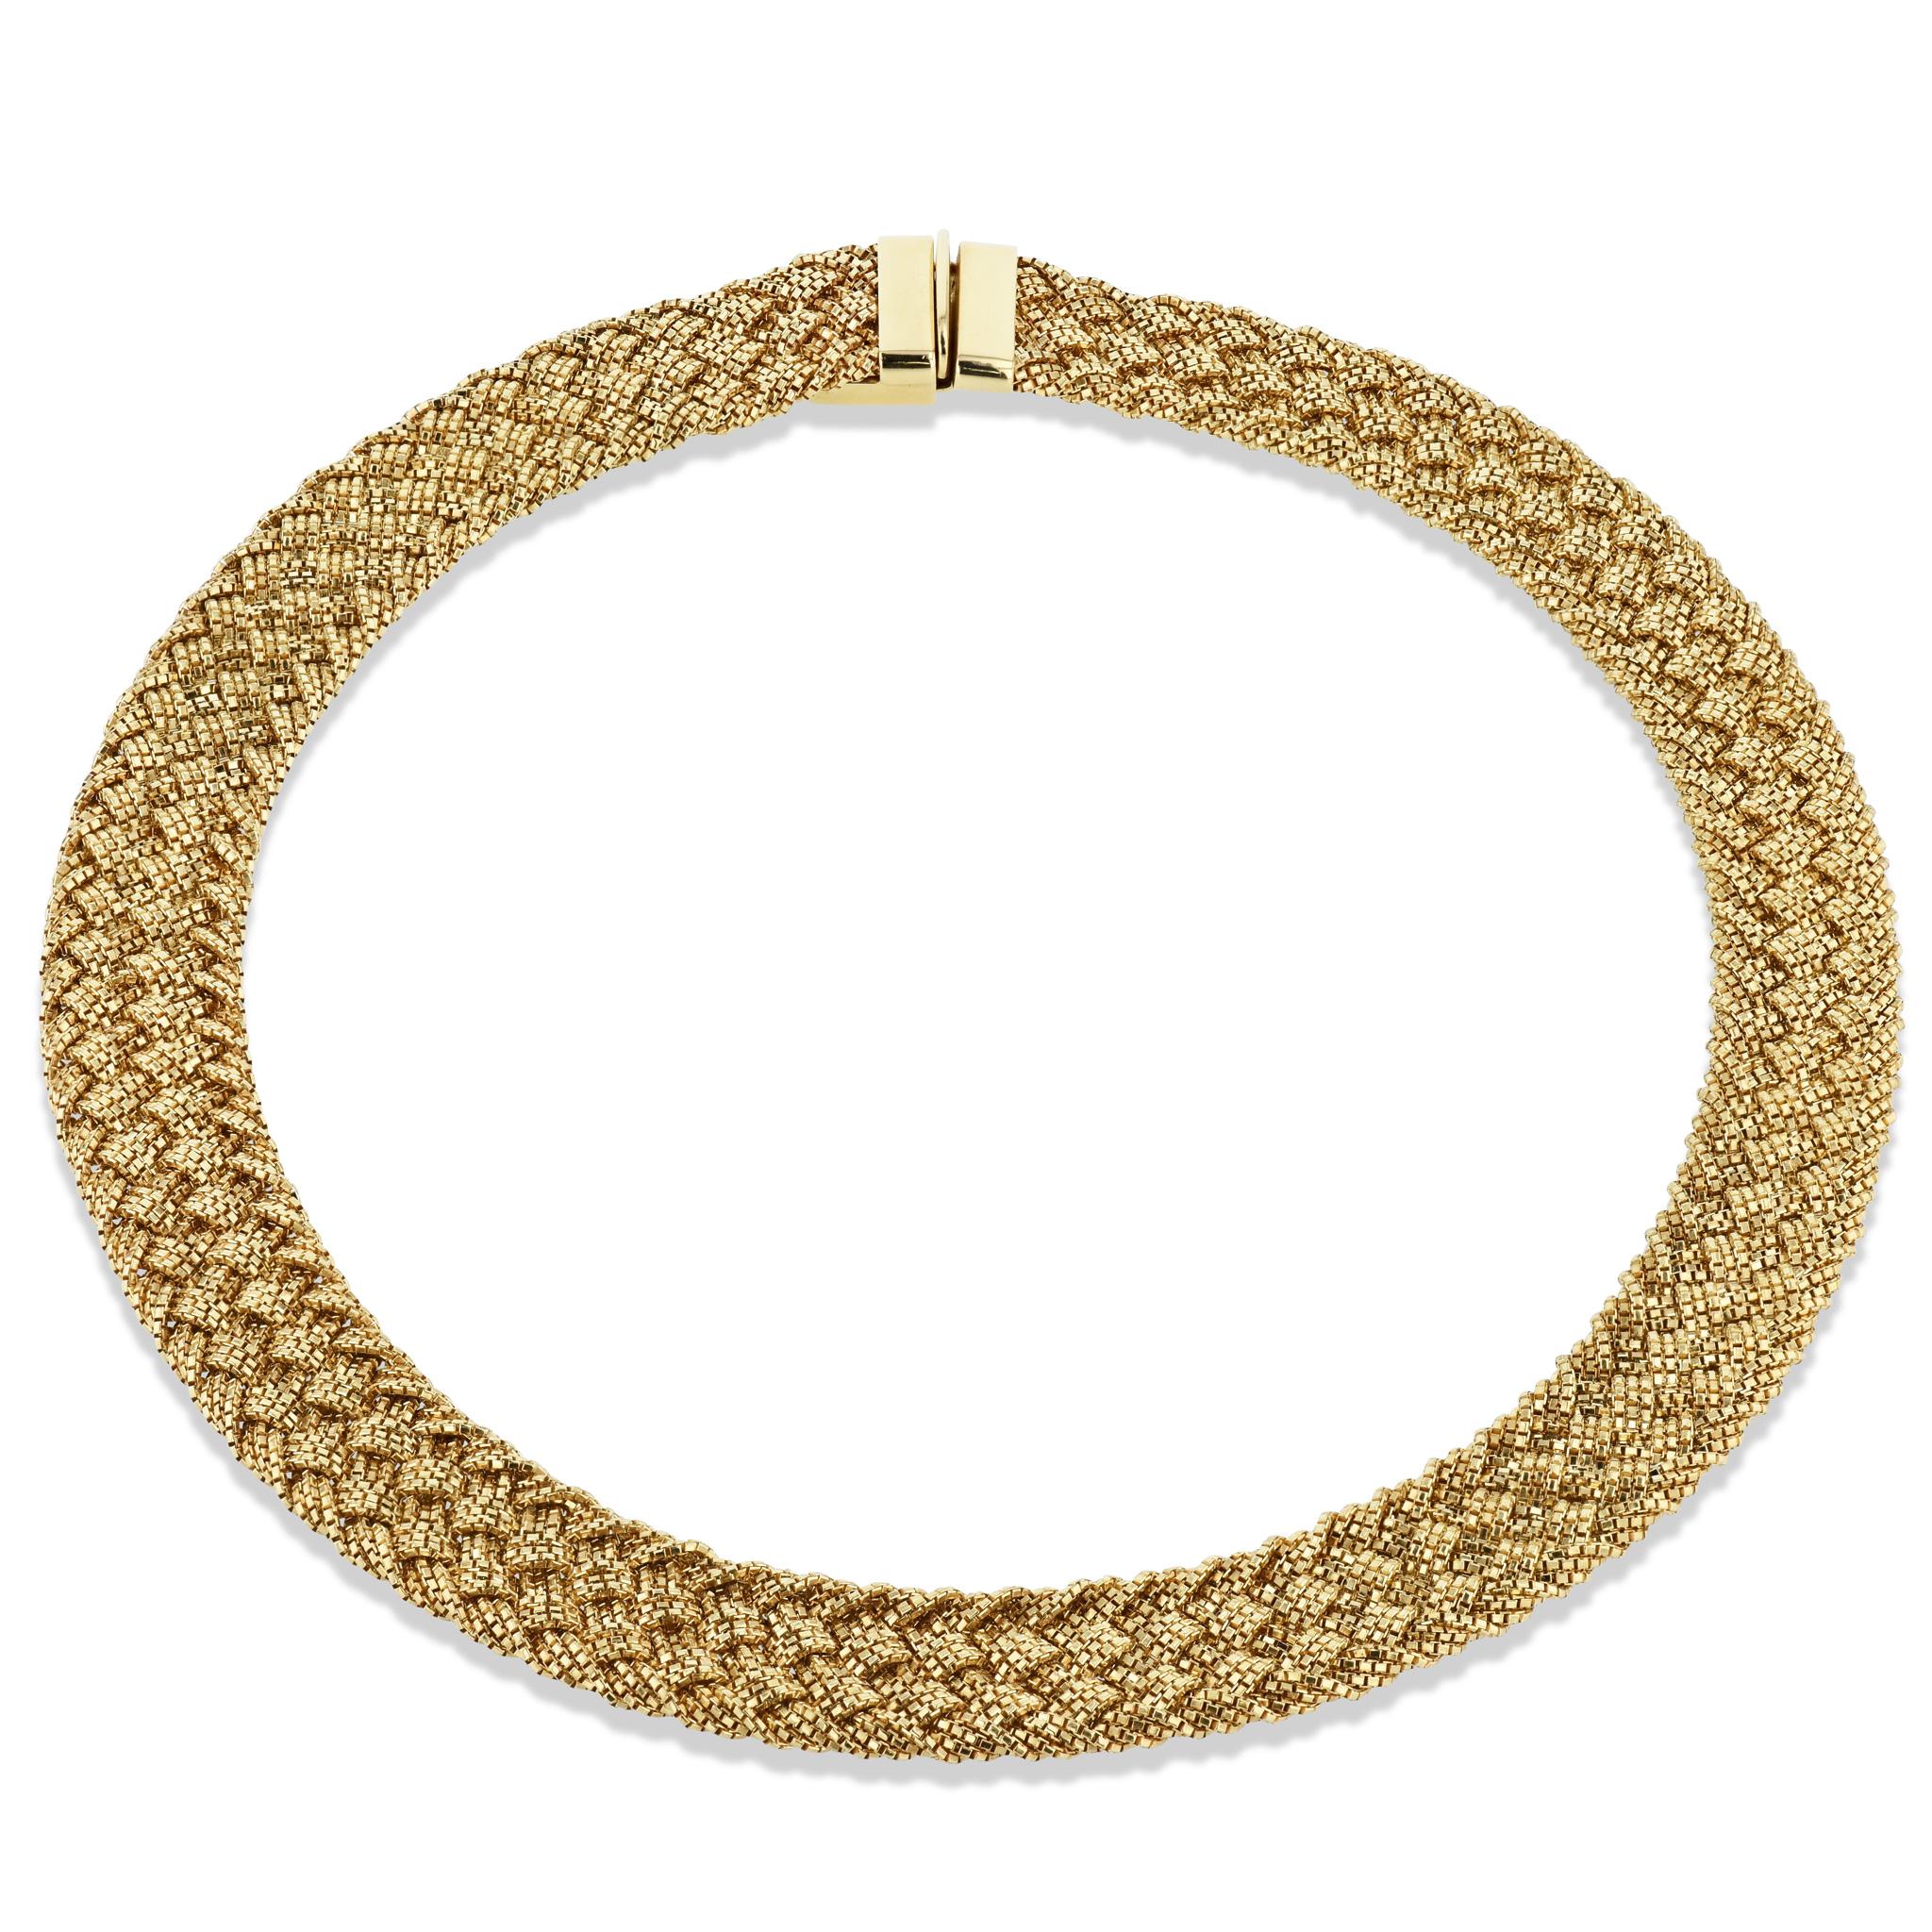 Diese schöne Yuri Ichihashi 18 Karat Gold Estate Halskette funkelt vorzüglich. 
Er misst 12,8 mm in der Breite und ist 16 Zoll lang. 
Er ist eine wunderbare Ergänzung für jede Schmucksammlung. 

-Yuri Ichihashi Gelbgold Nachlass Halskette
-18 Karat